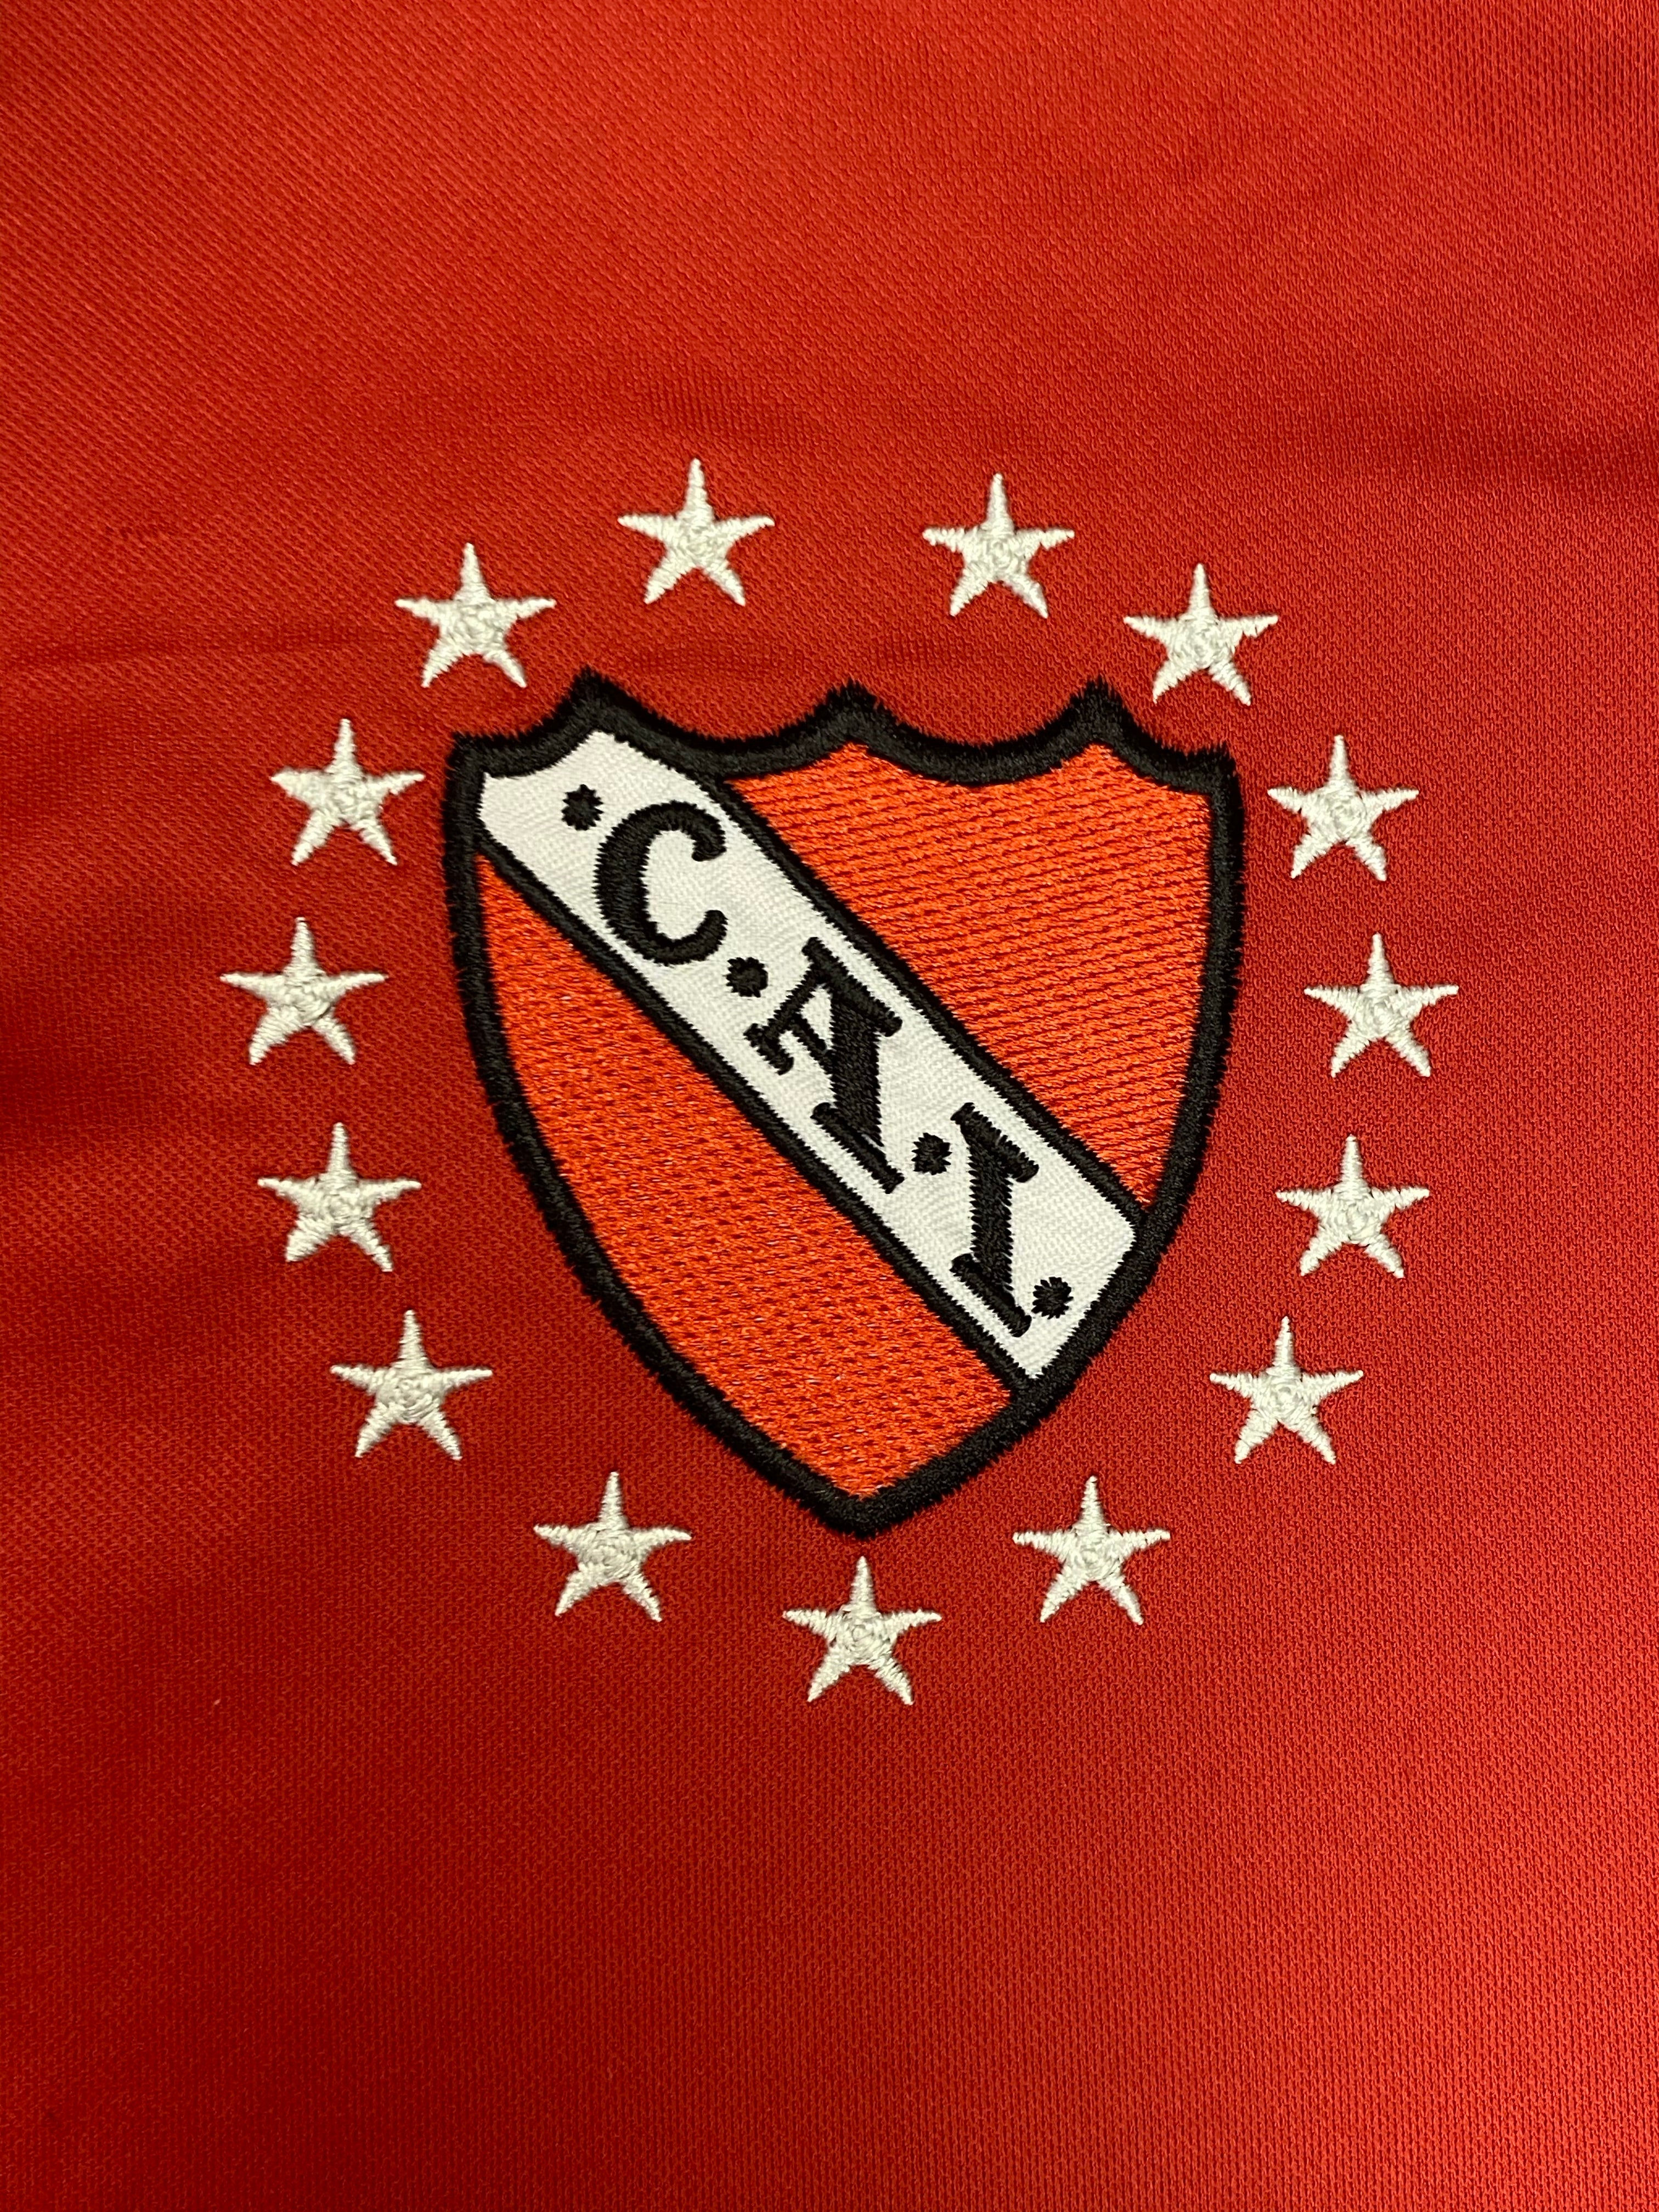 Club Atlético Independiente (Chivilcoy)